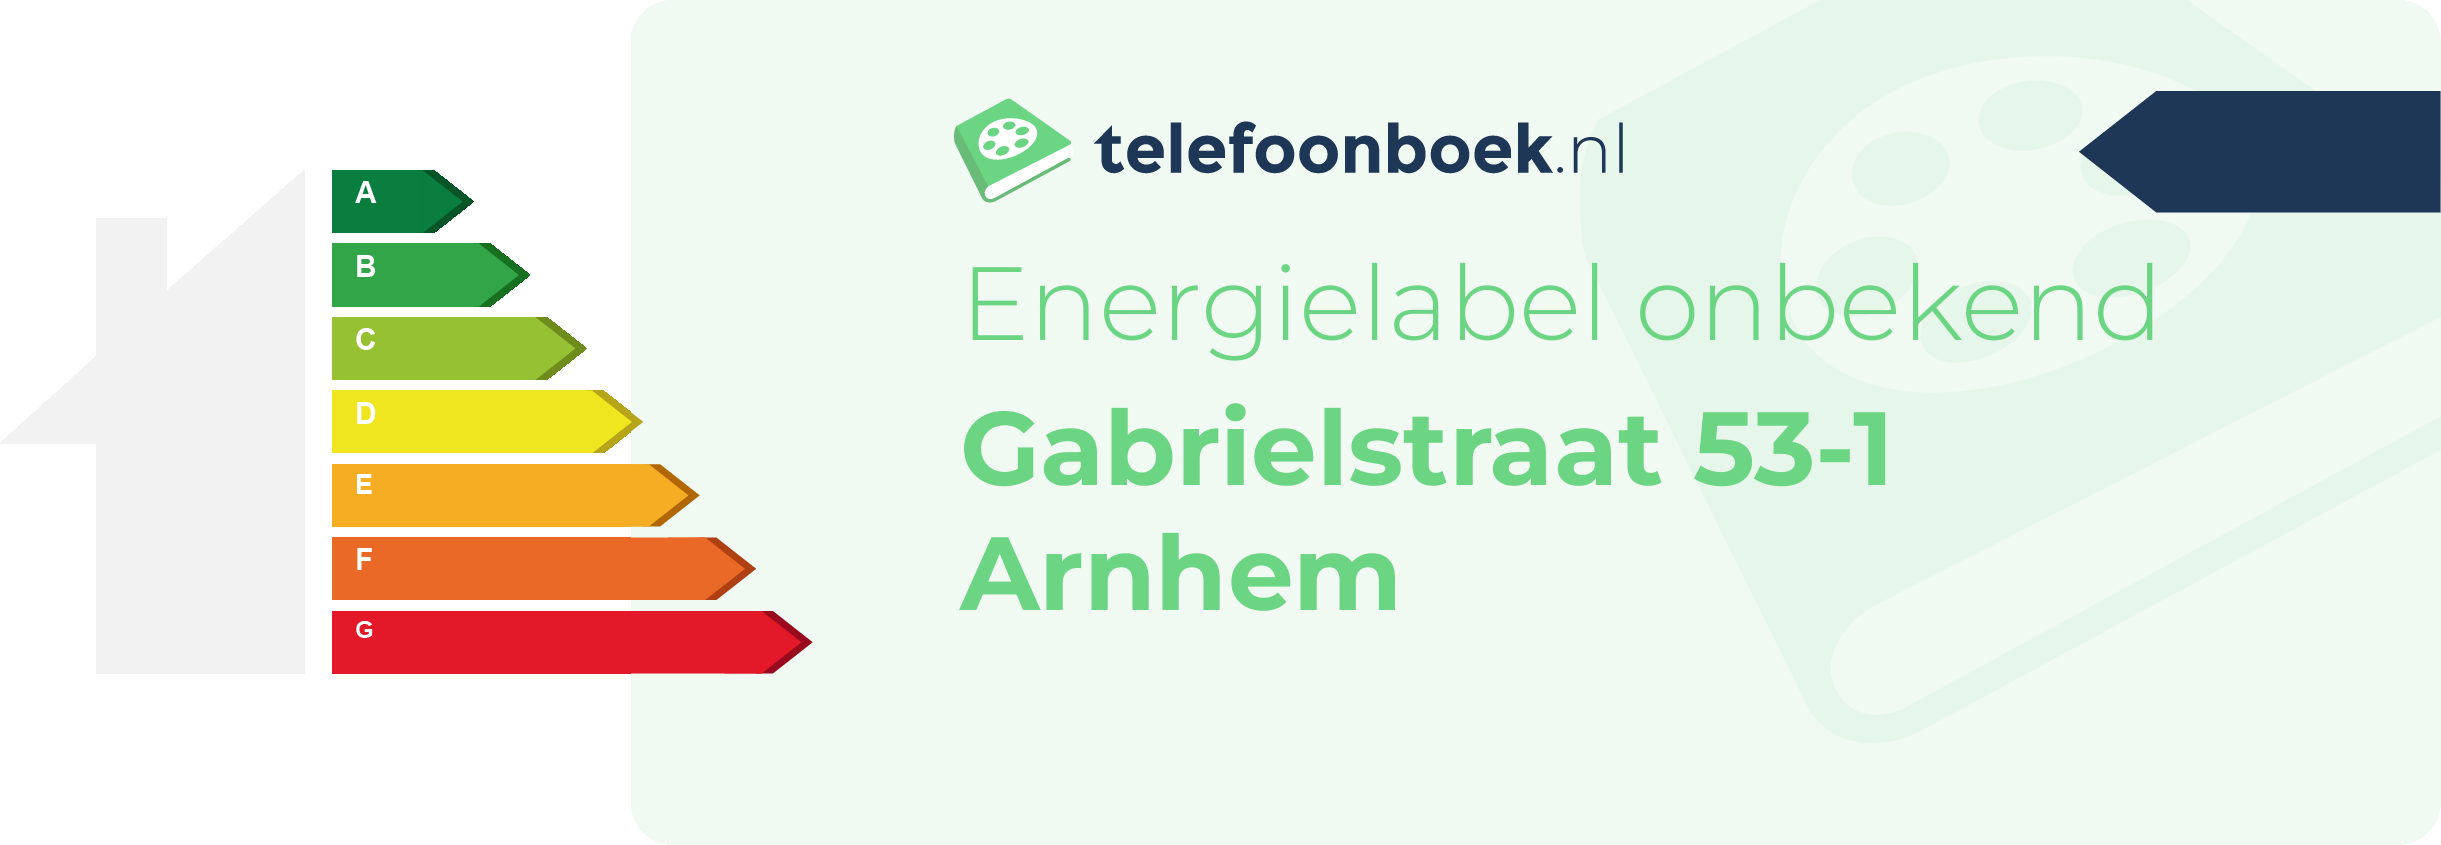 Energielabel Gabrielstraat 53-1 Arnhem